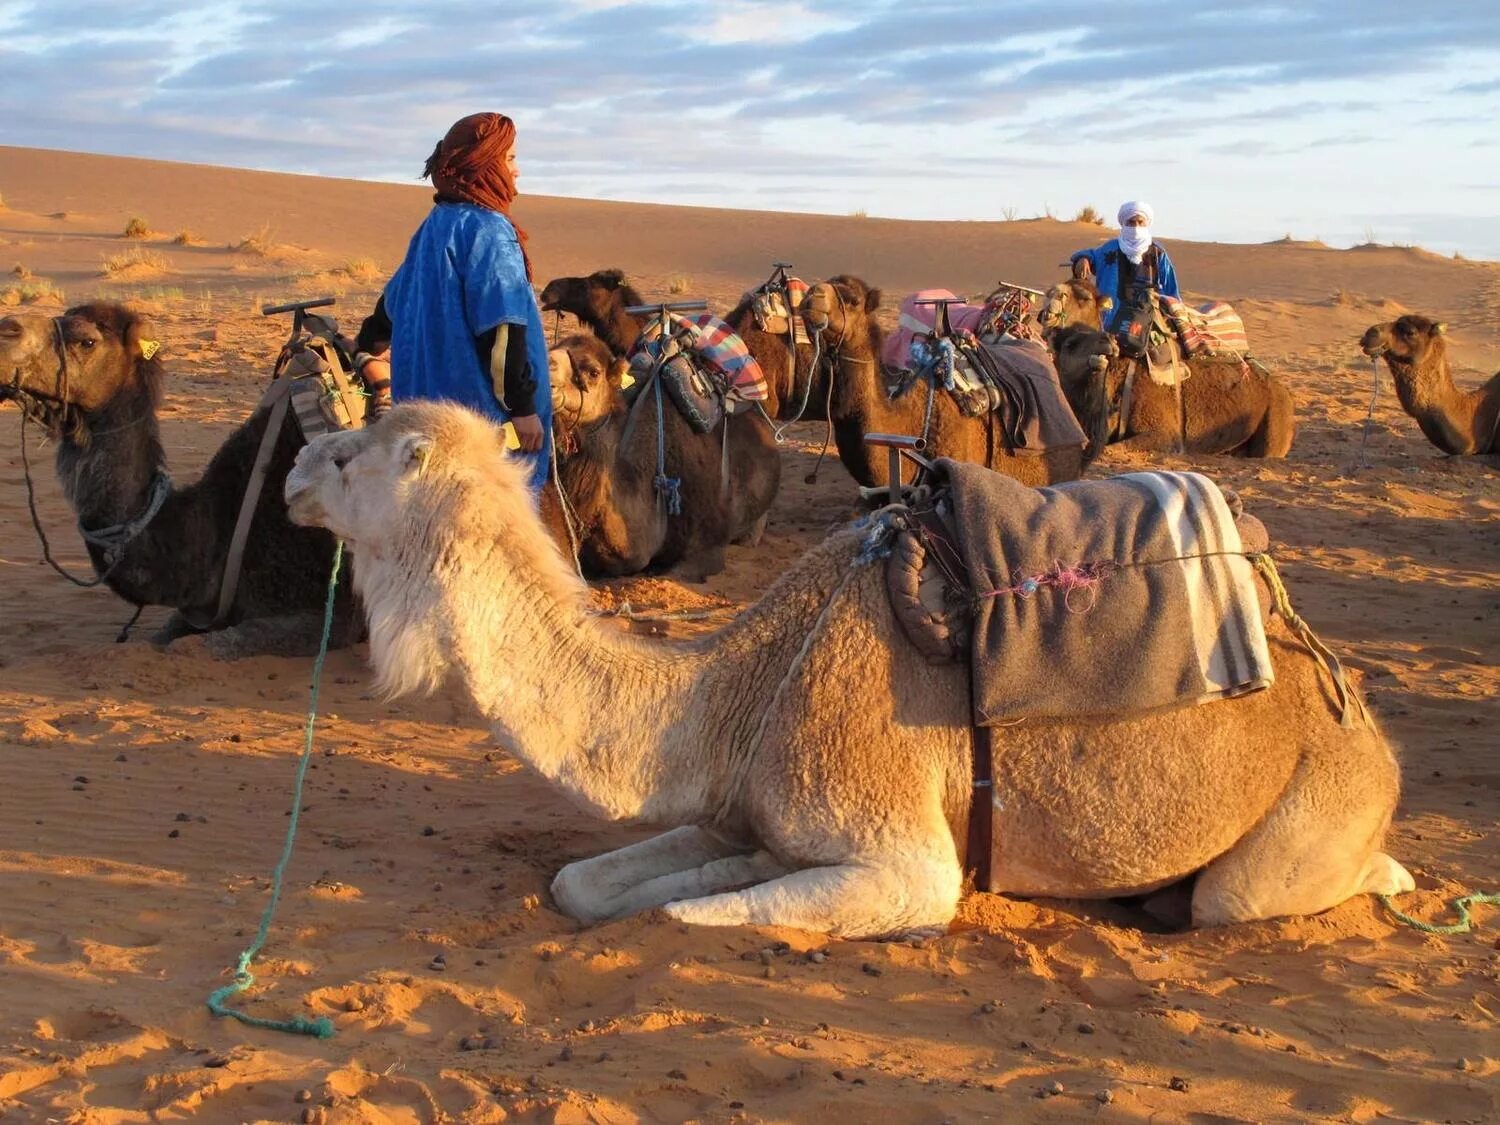 Новости караван. Бедуины Марокко. Караван в пустыне Каракум. Караваны верблюдов с бедуинами. Караван марокканских верблюдов дромедаров.